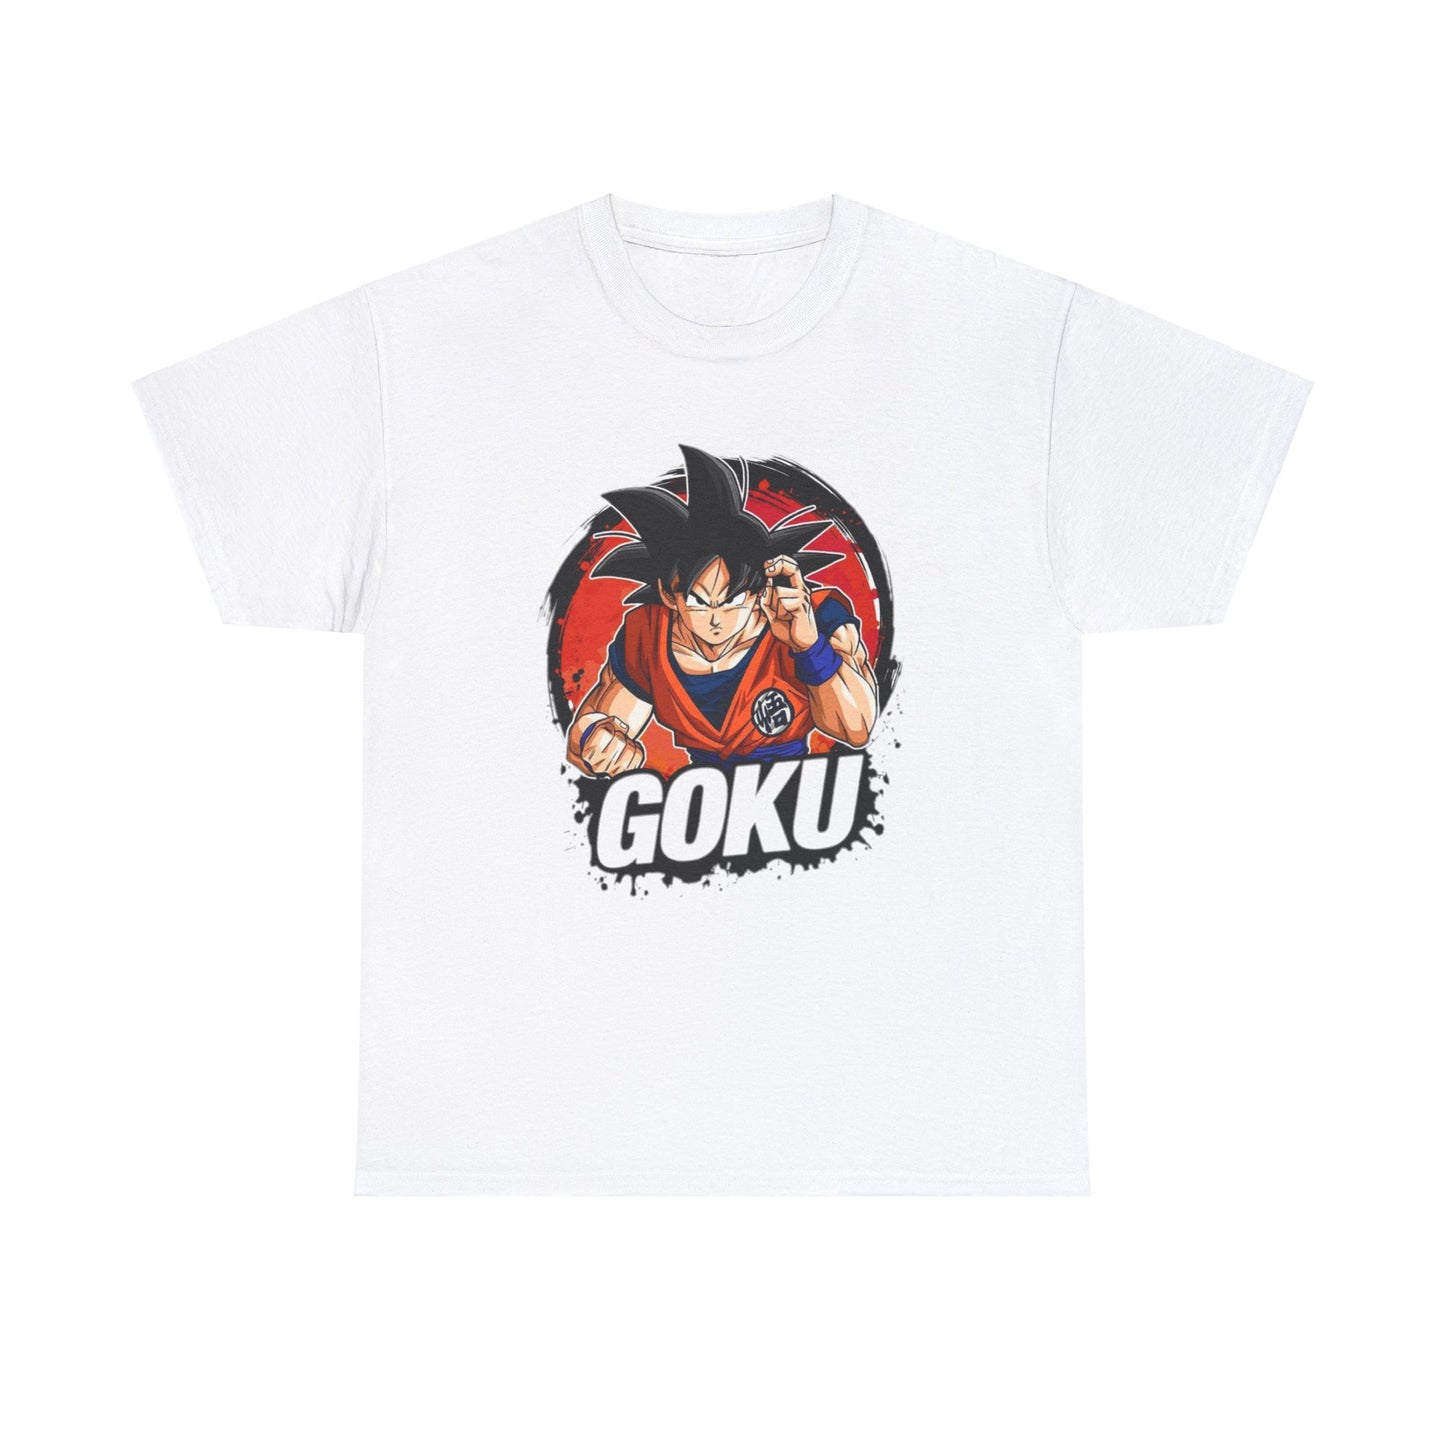 Goku Unisex Heavy Cotton Tee